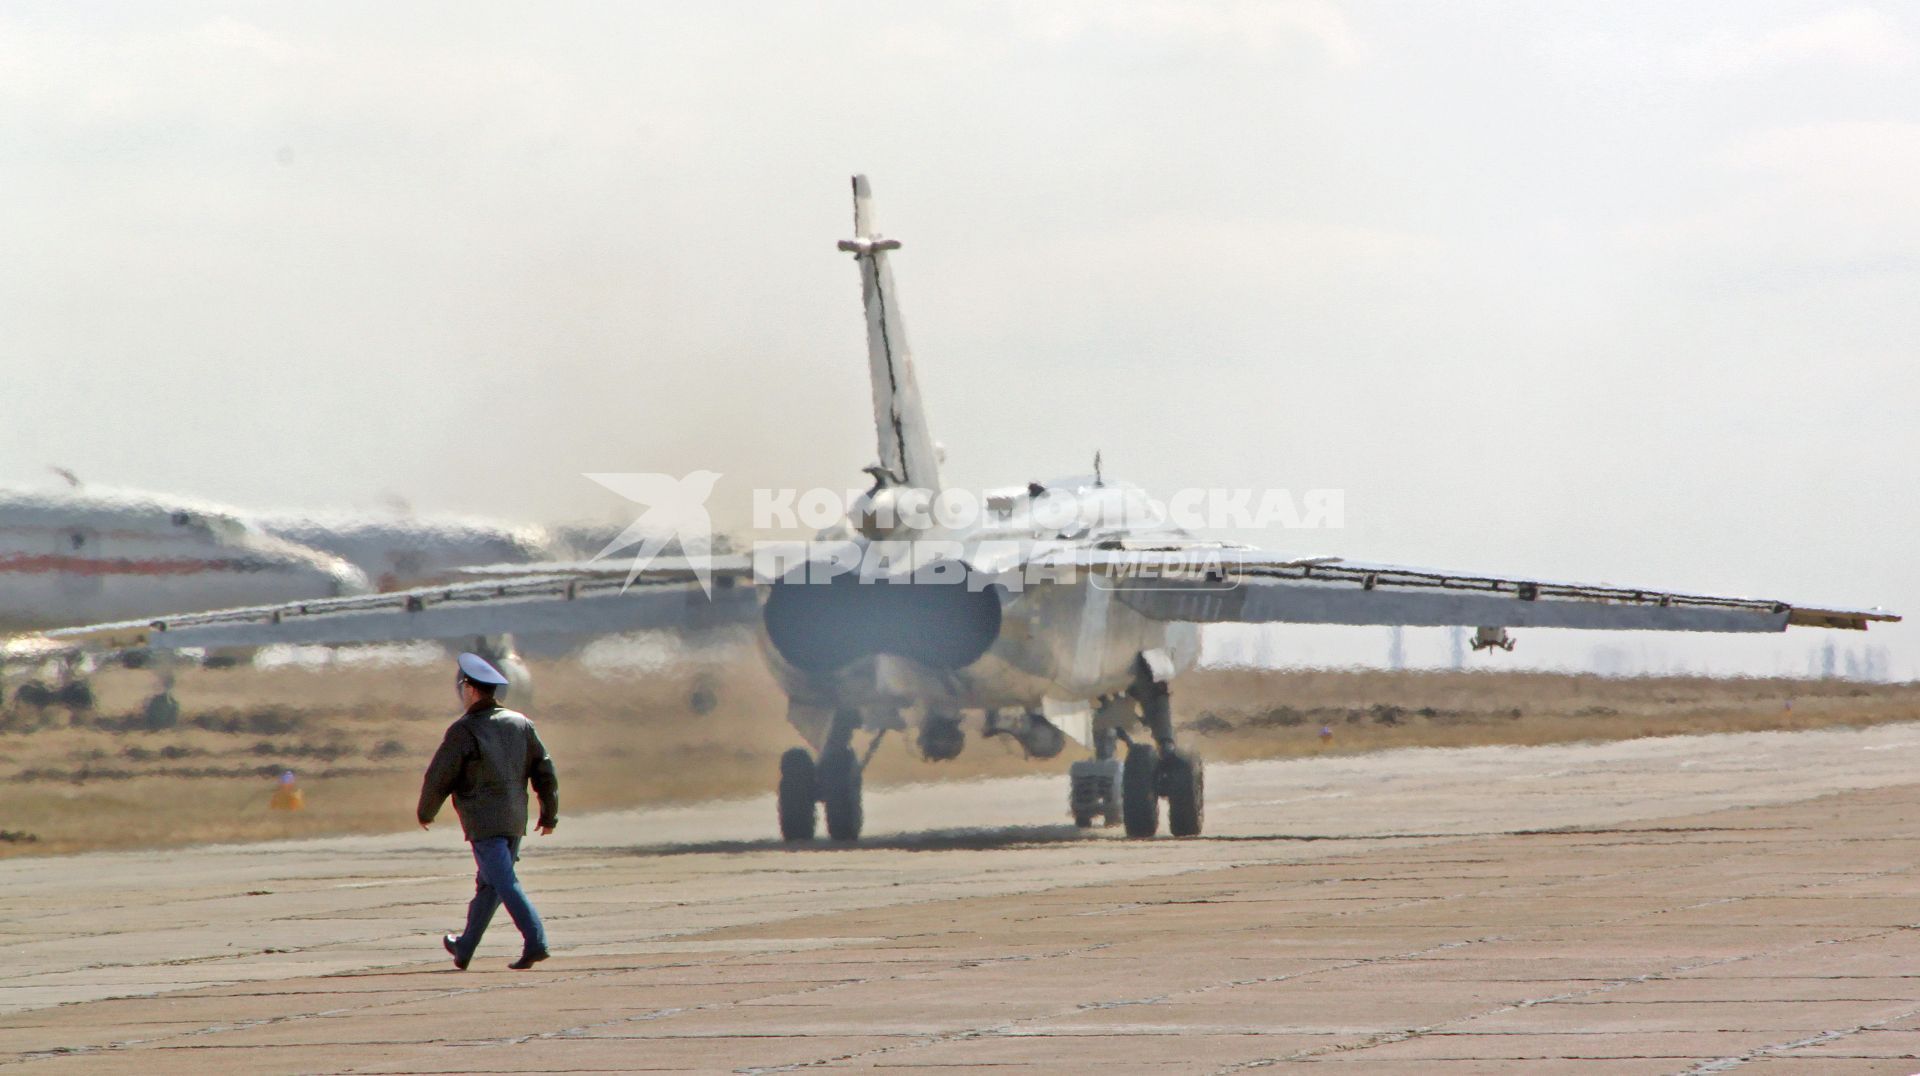 Военный идет по летному полю на фоне работающих двигателя военного самолета фронтового бомбардировщика СУ-24М.